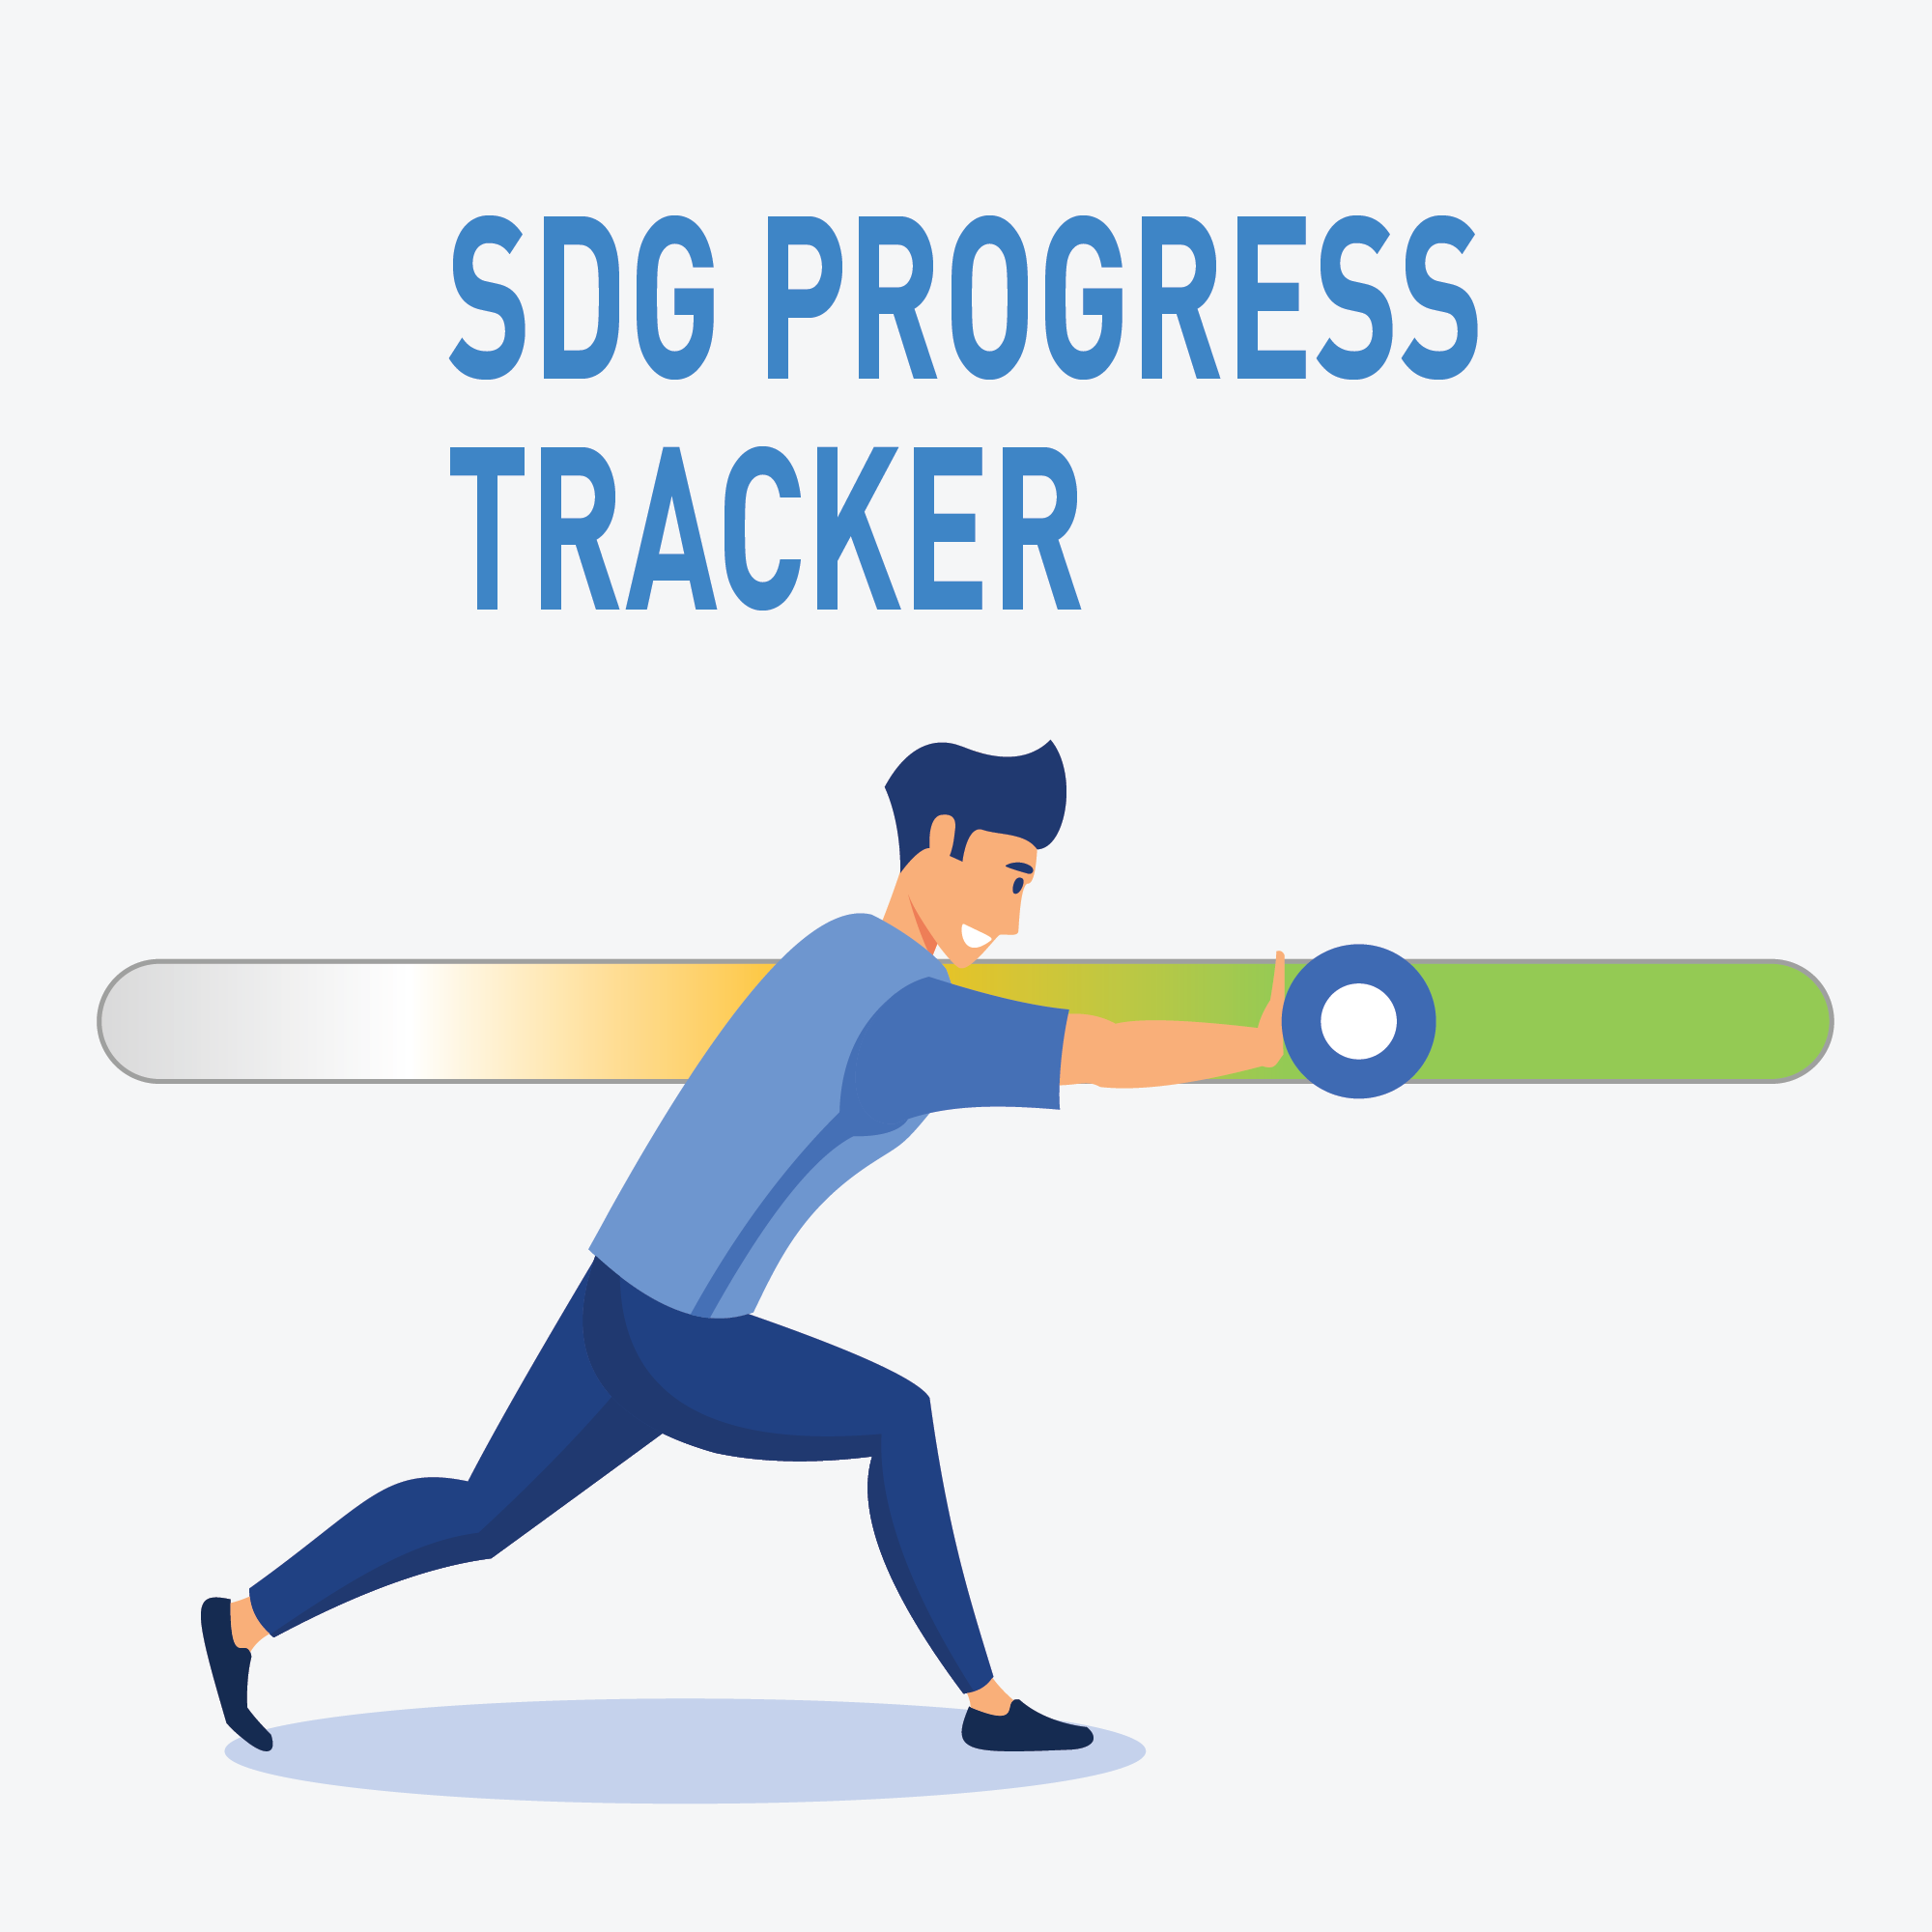 SDG Progress Tracker